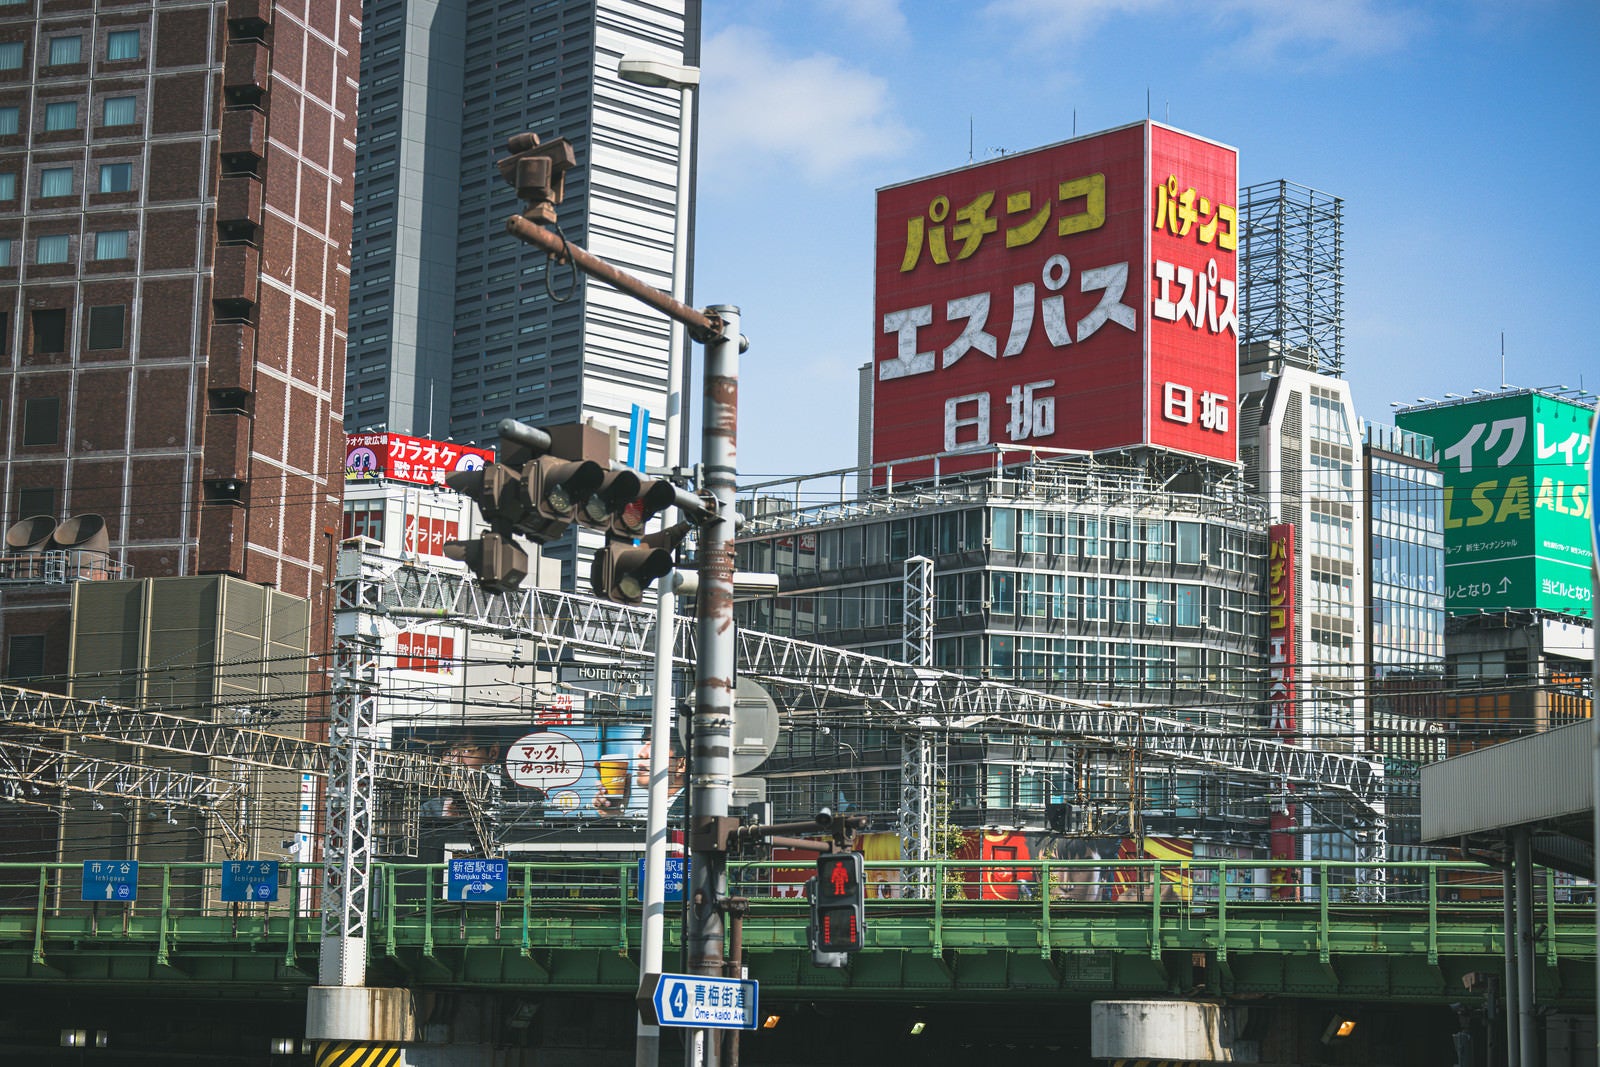 「高架越しに見る新宿東口の様子」の写真